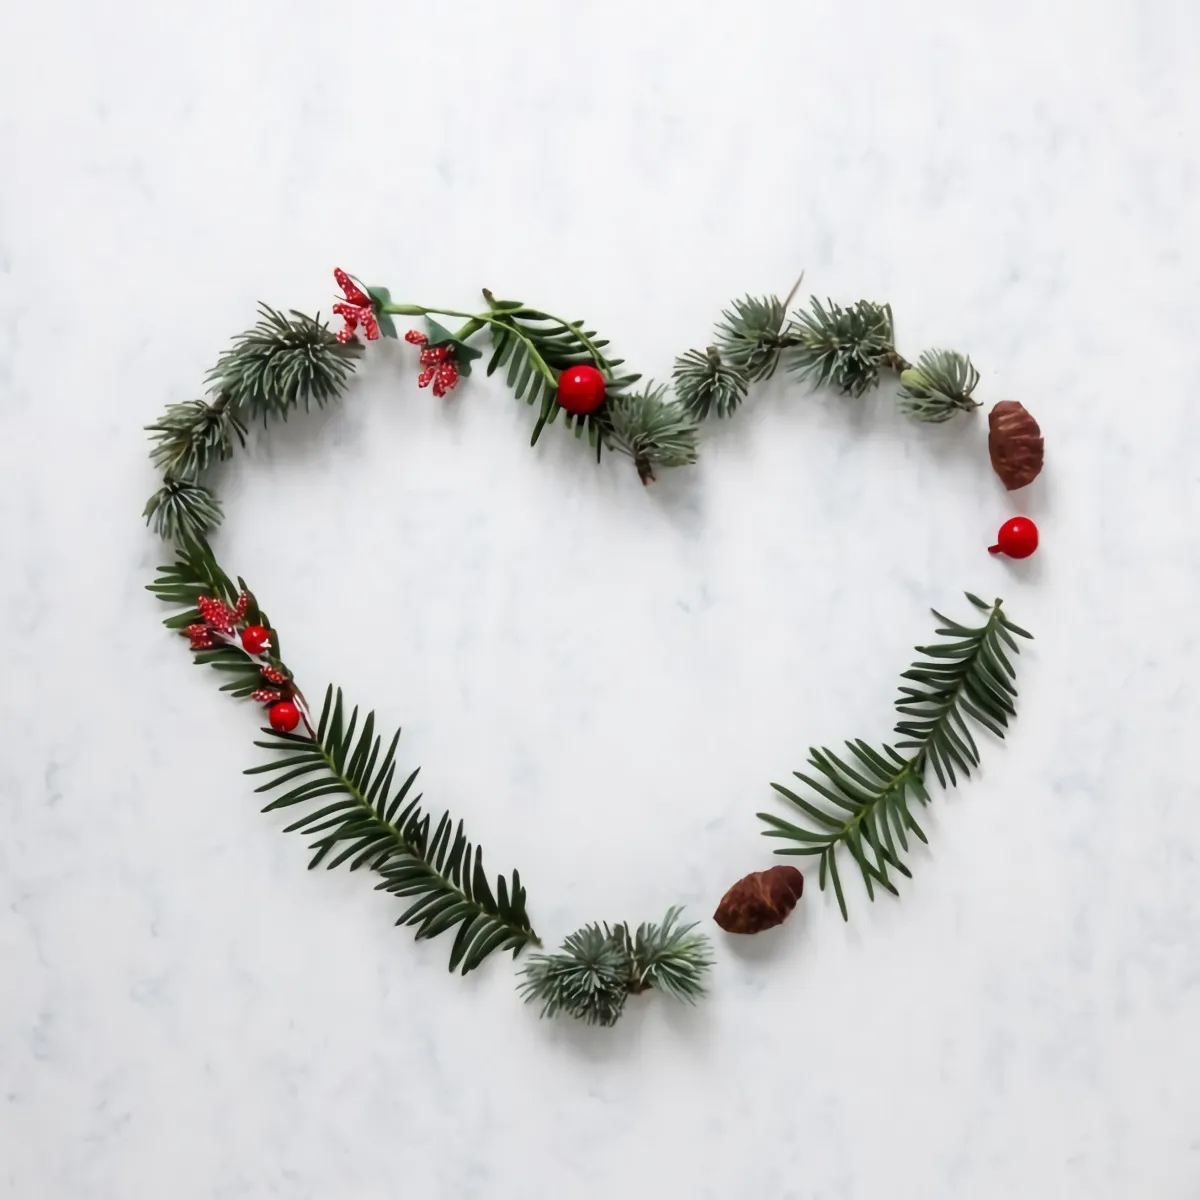 decoration hiver facile activite manuelle branches de sapin baies rouges